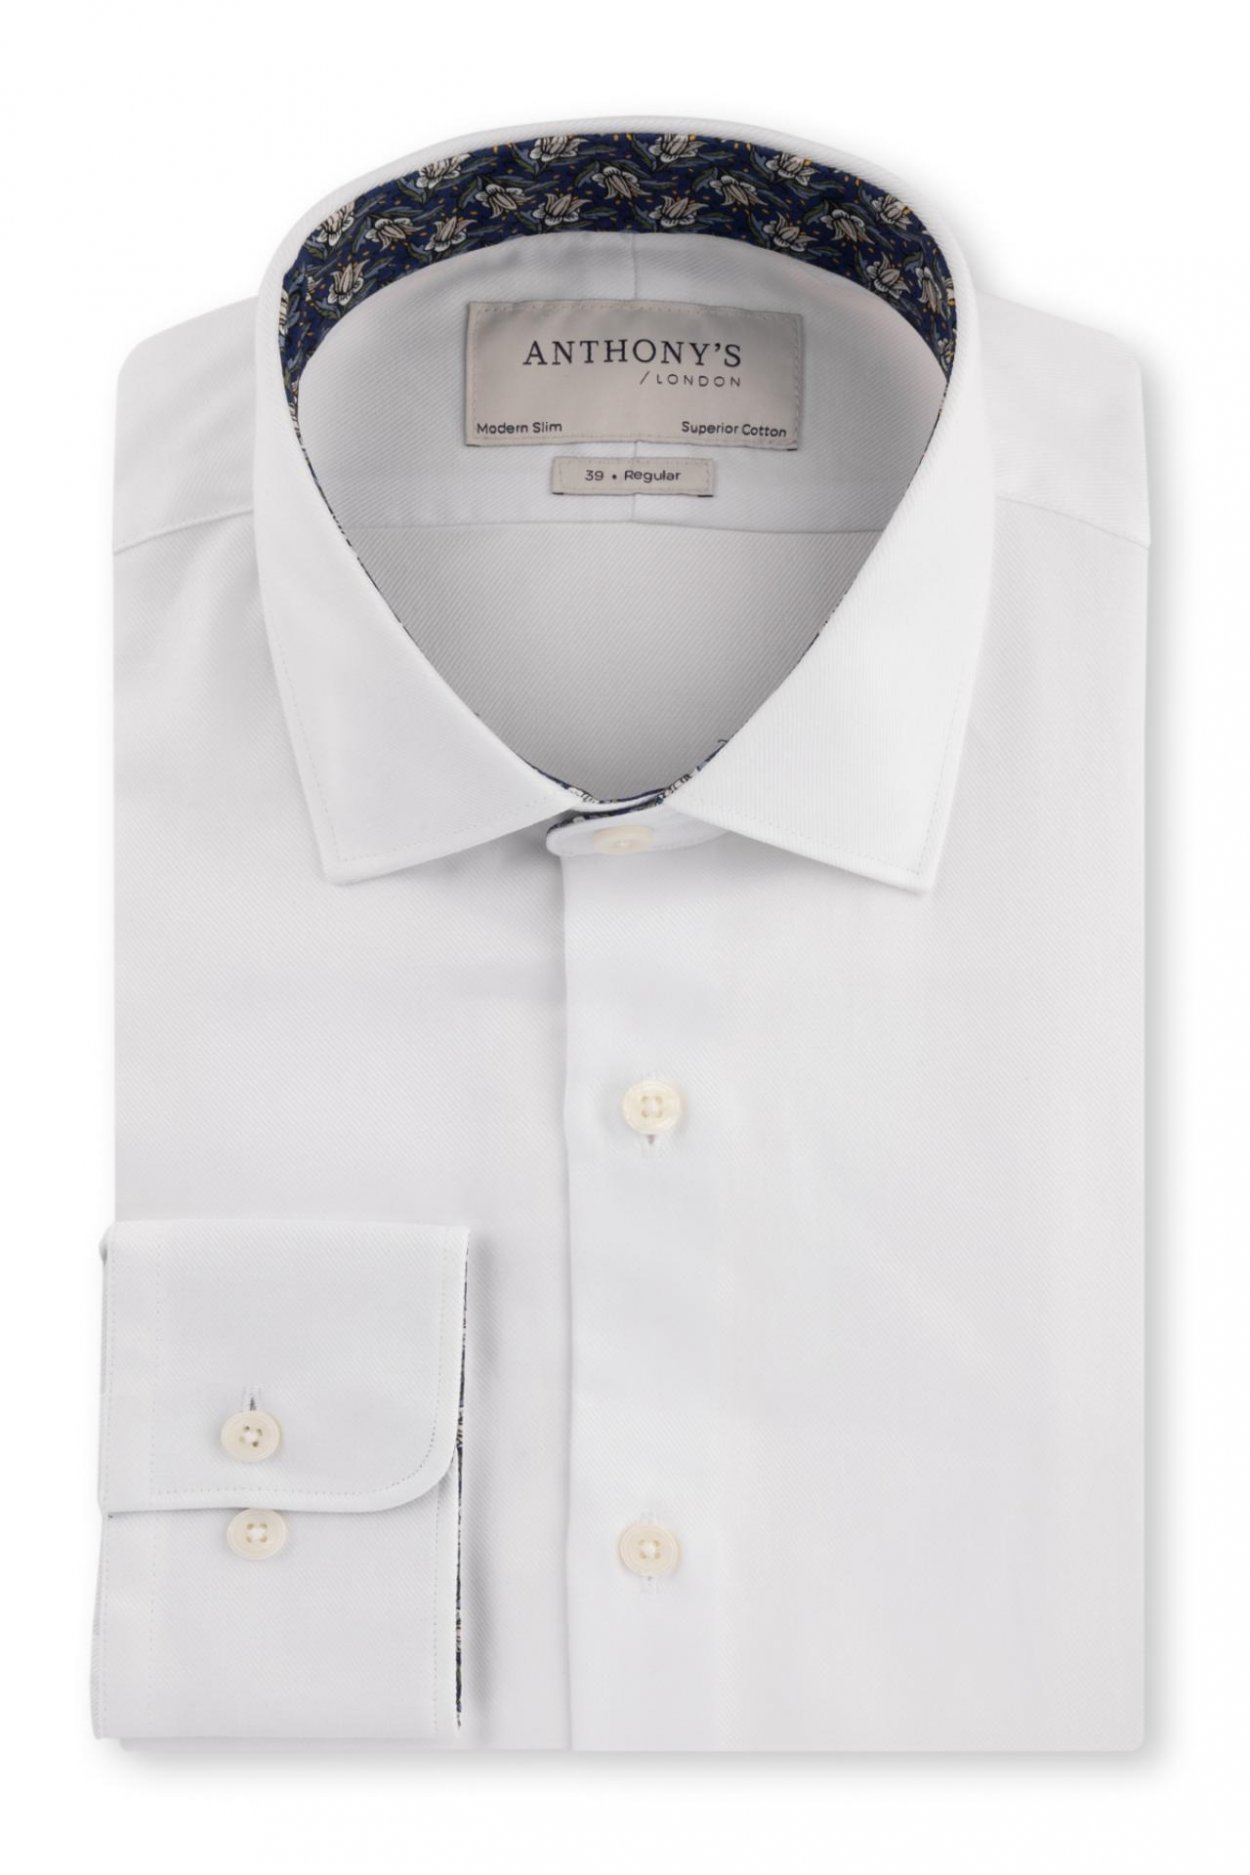 Pánská bílá košile s modrým detailem